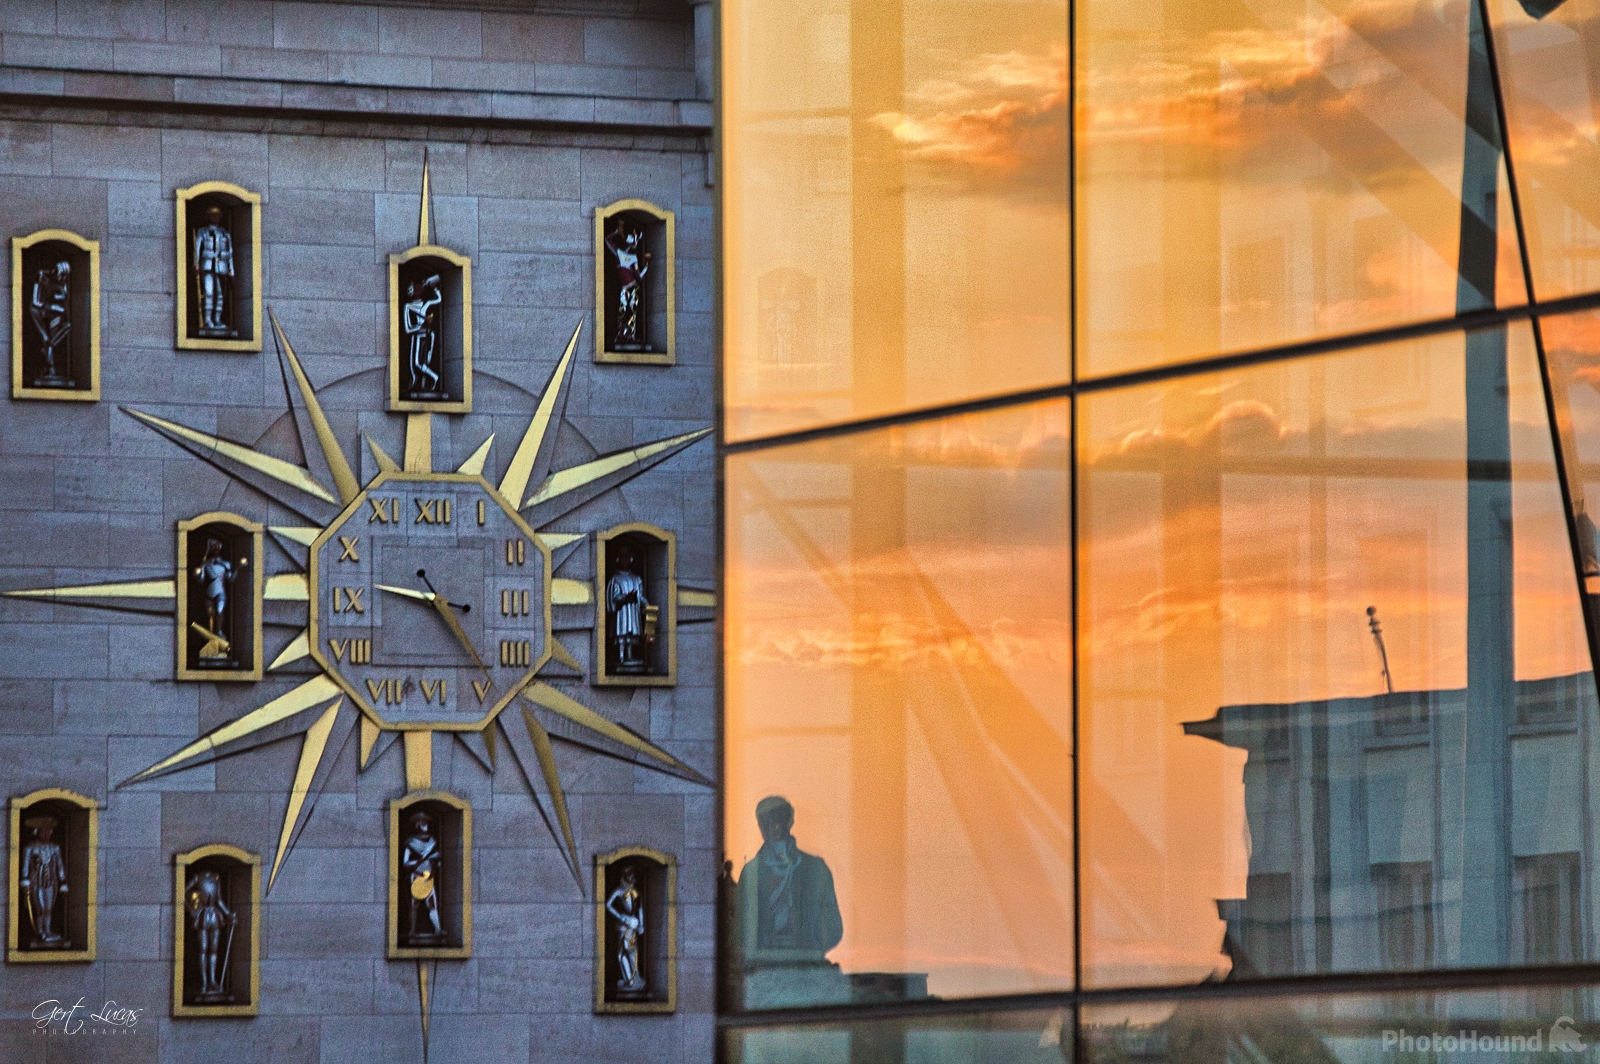 Image of Jacquemart Clock by Gert Lucas